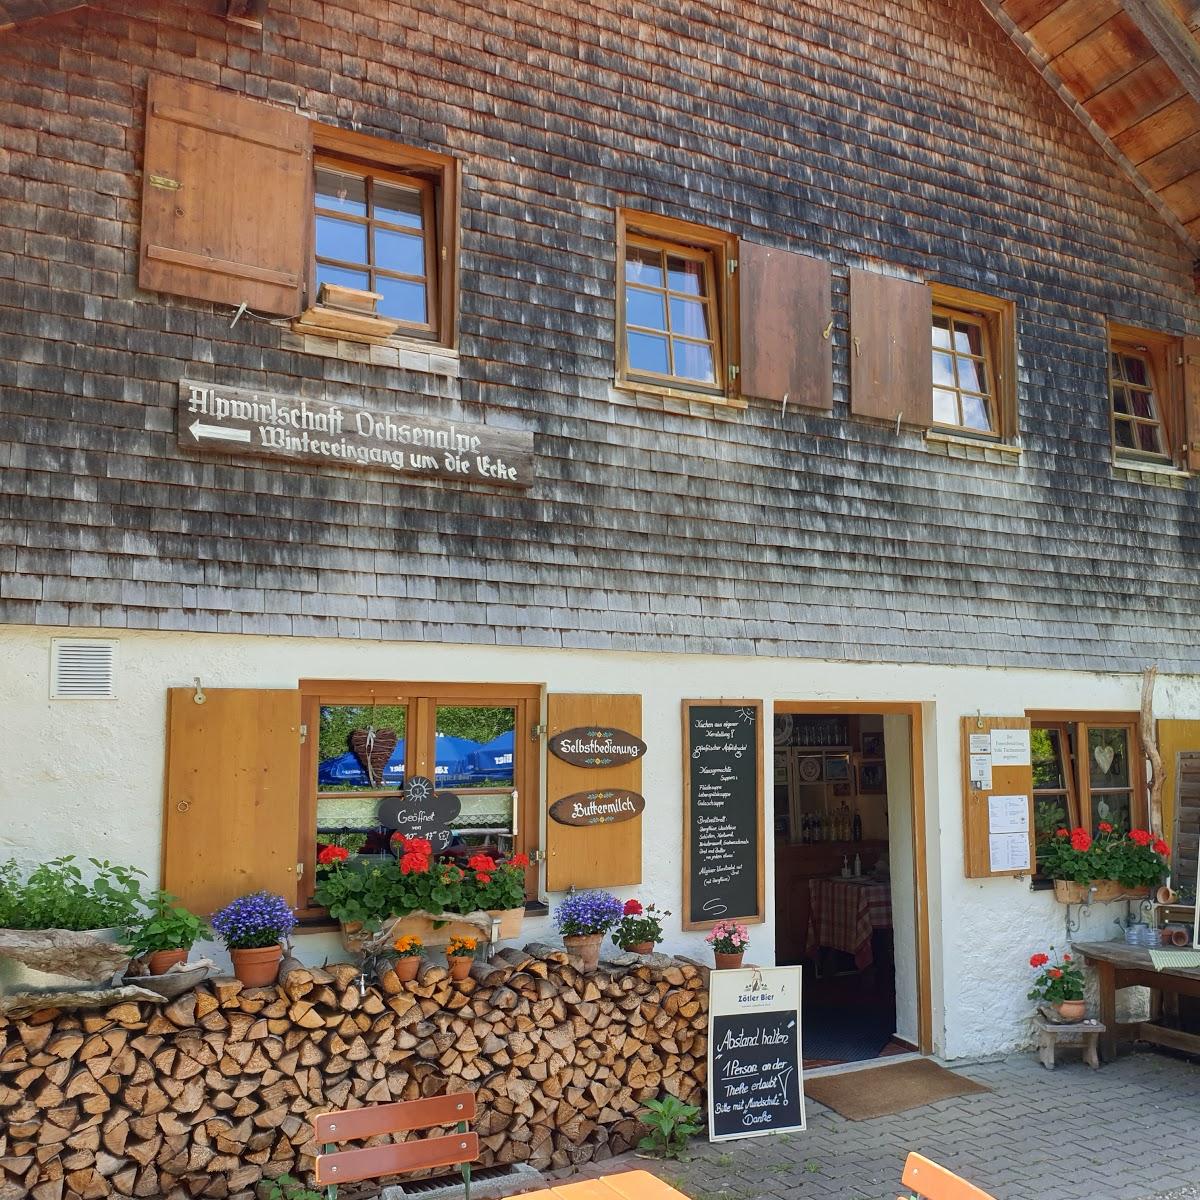 Restaurant "Waldfestplatz Gund in Vorderhindelang" in  Hindelang